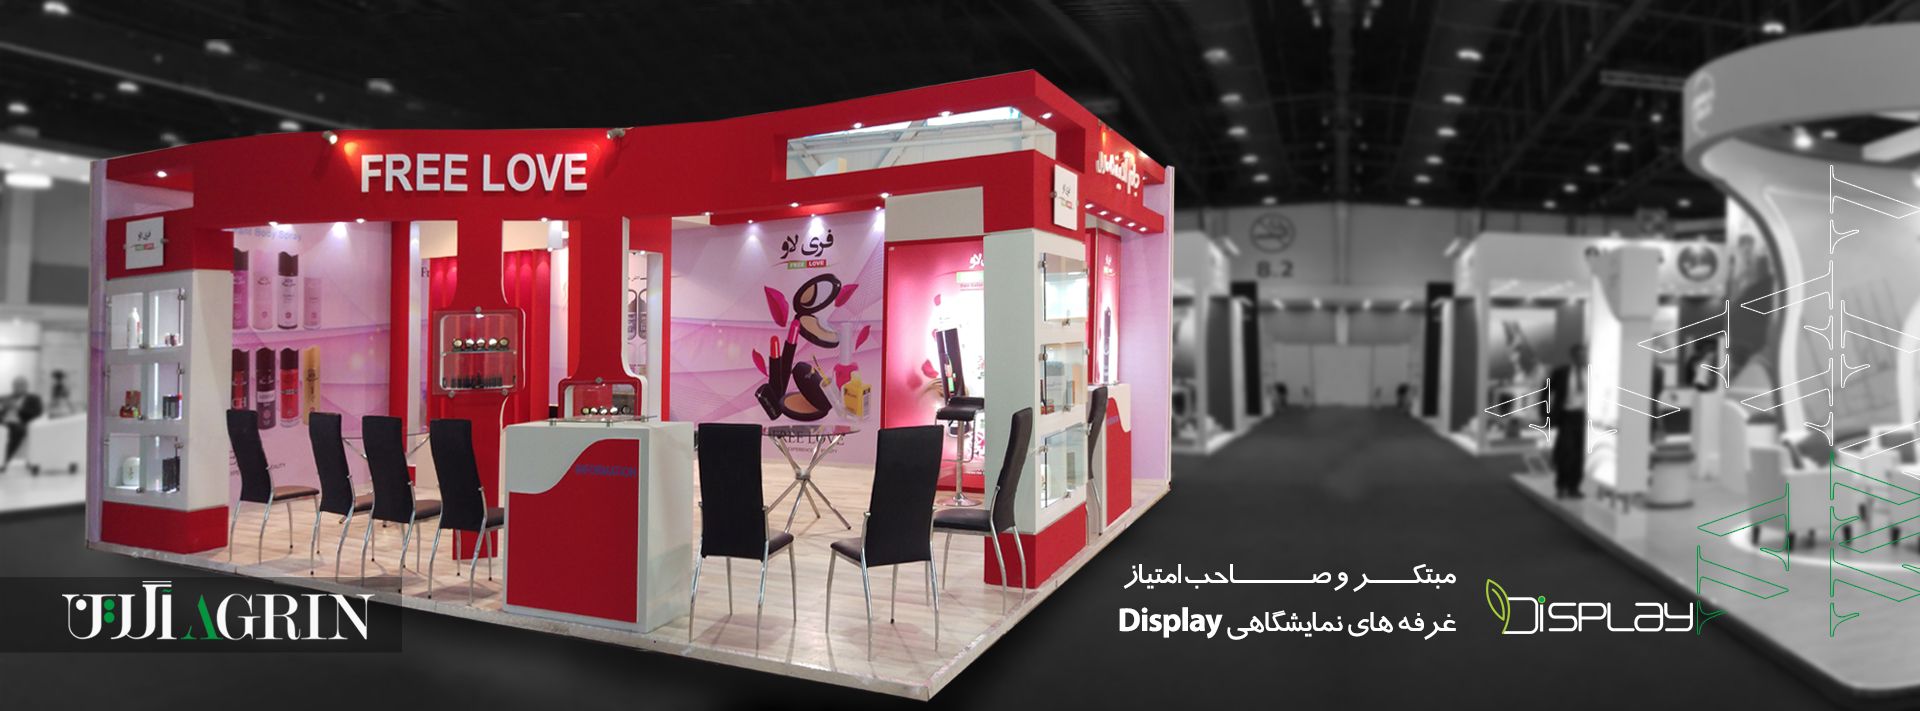 مبتکر و صاحب امتیاز نسل جدید غرفه های نمایشگاهی با برند display در ایران